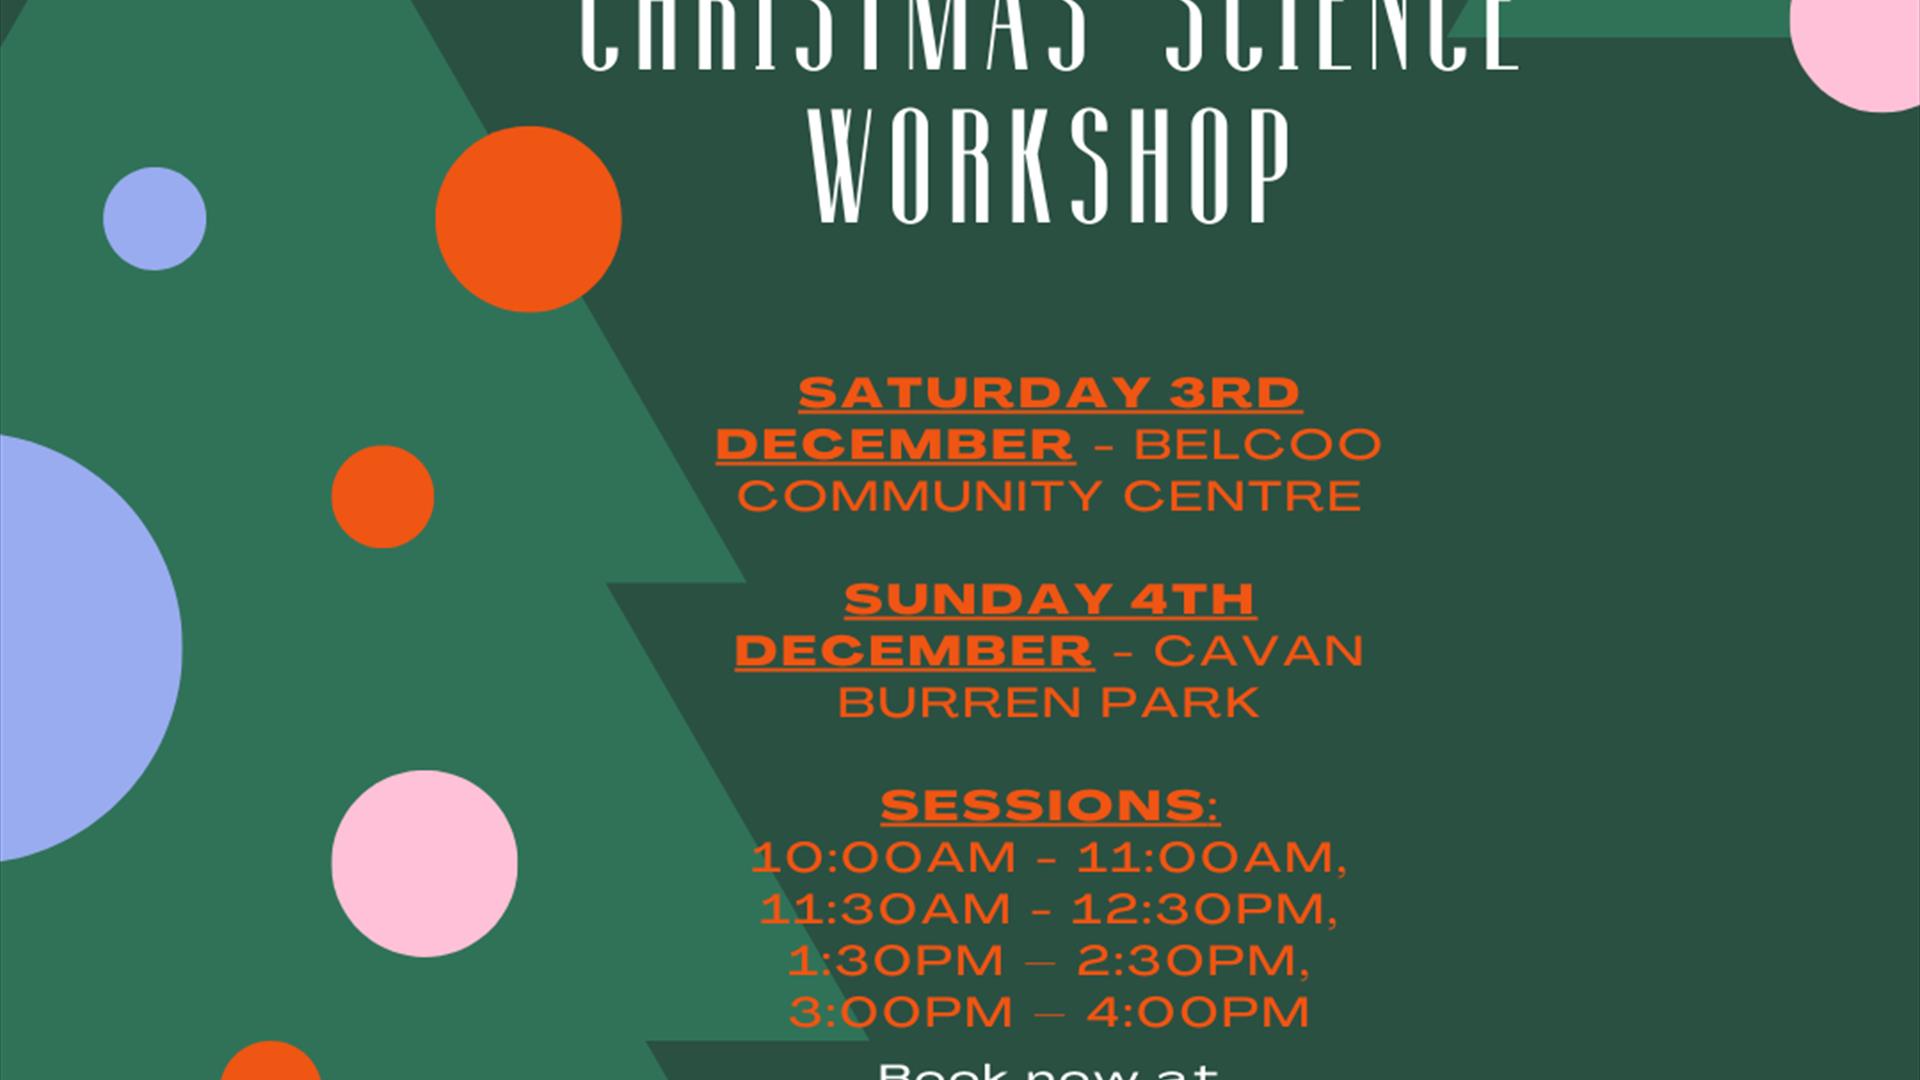 Christmas science workshop